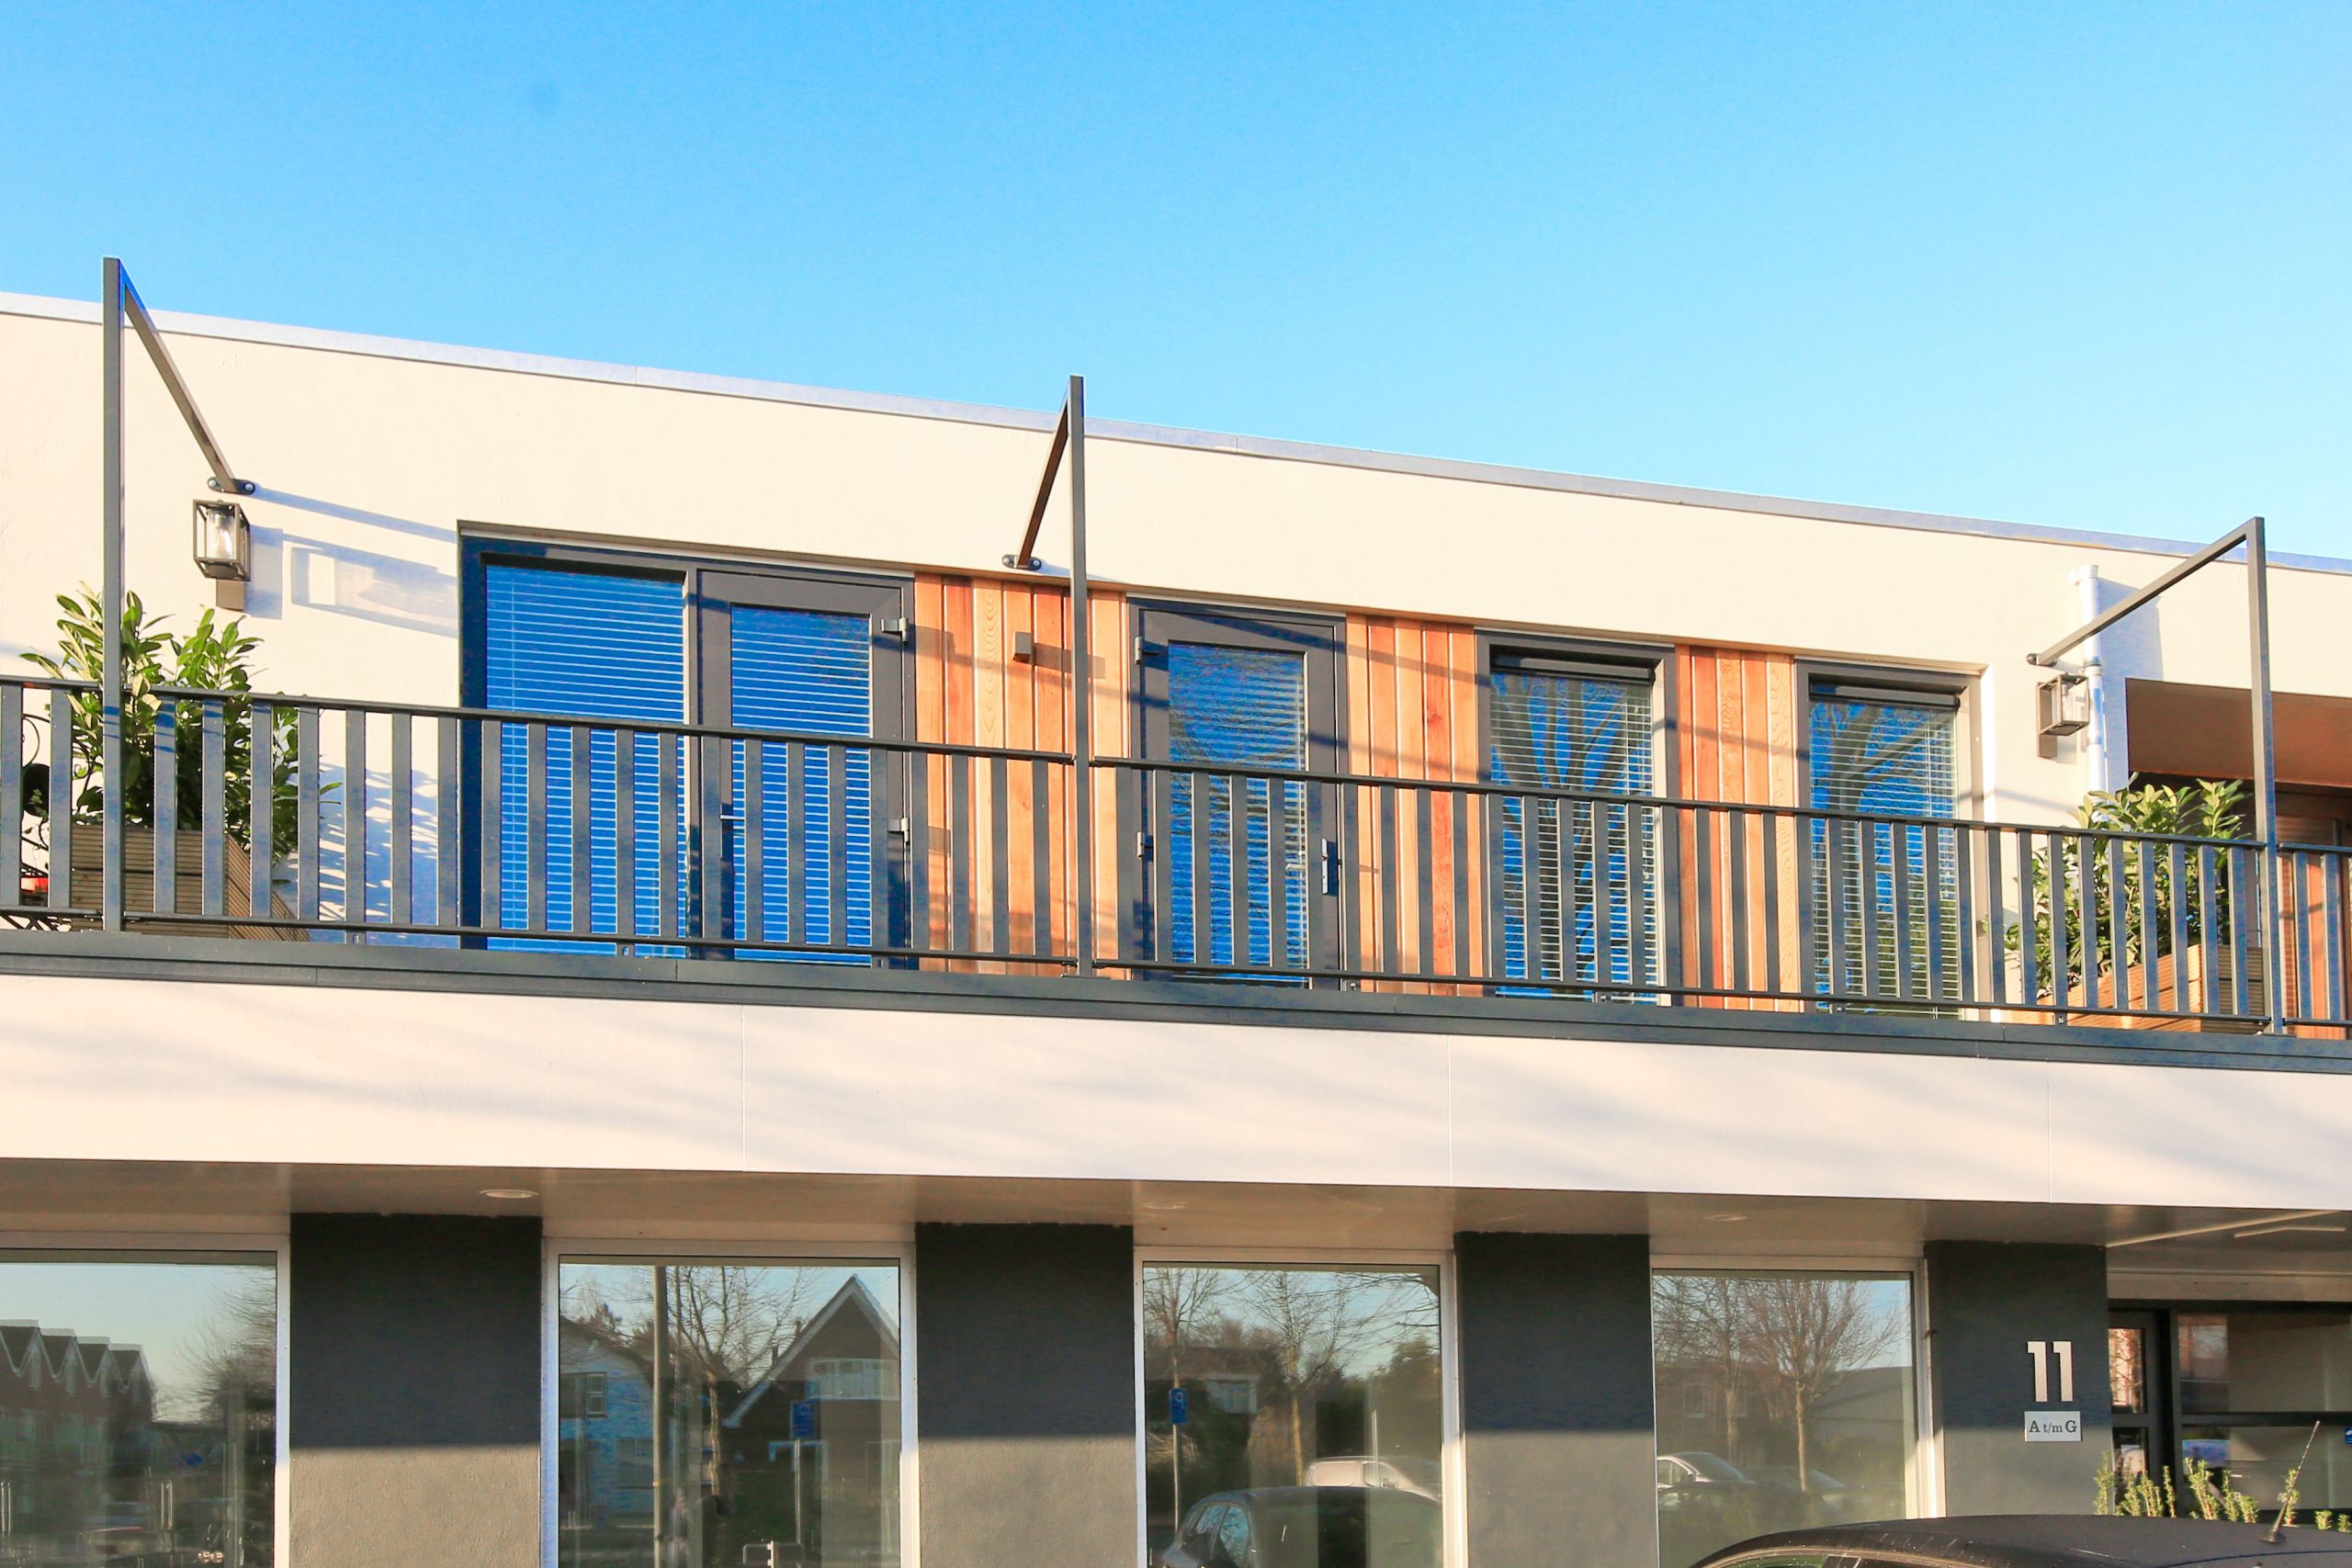 Te Huur! Luxe appartement op de 1e etage met balkon en vrij uitzicht @Nieuw-Vennep centrum Schoolstraat 11-b